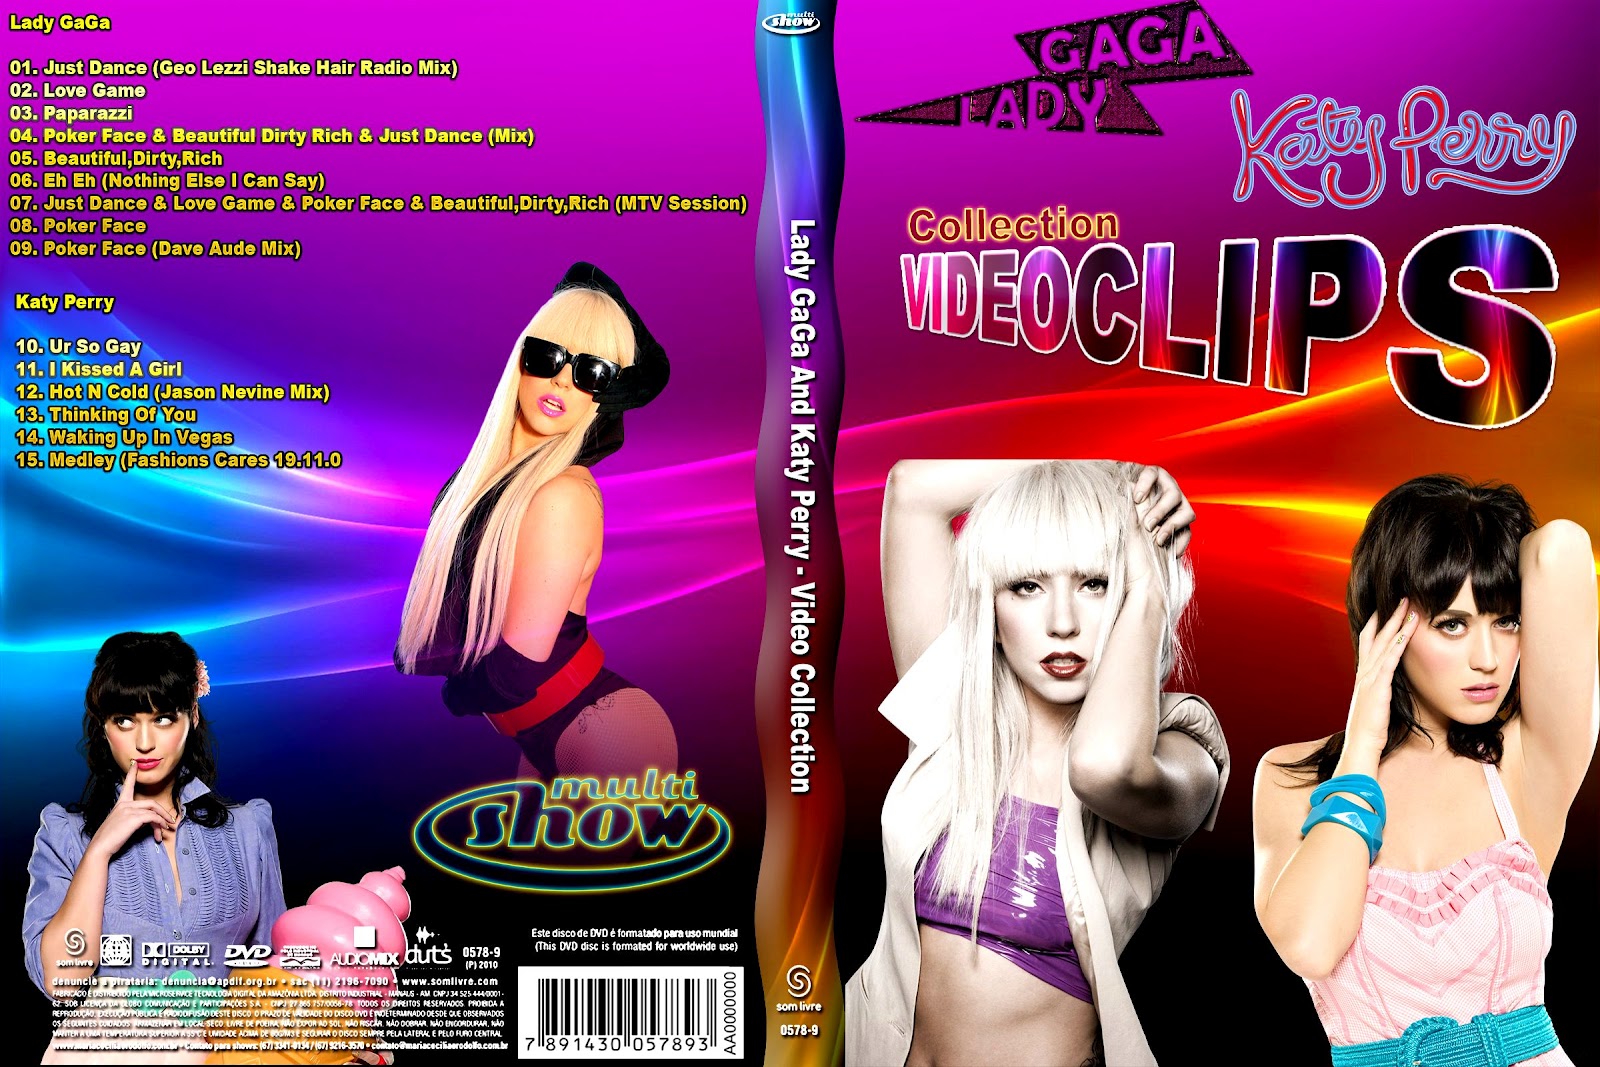 http://4.bp.blogspot.com/-9dIE5PMQOLk/T60evJS4QUI/AAAAAAAAAic/f0uDLDf2K8s/s1600/Lady+GaGa+And+Katy+Perry+-+Video+Collection.jpg